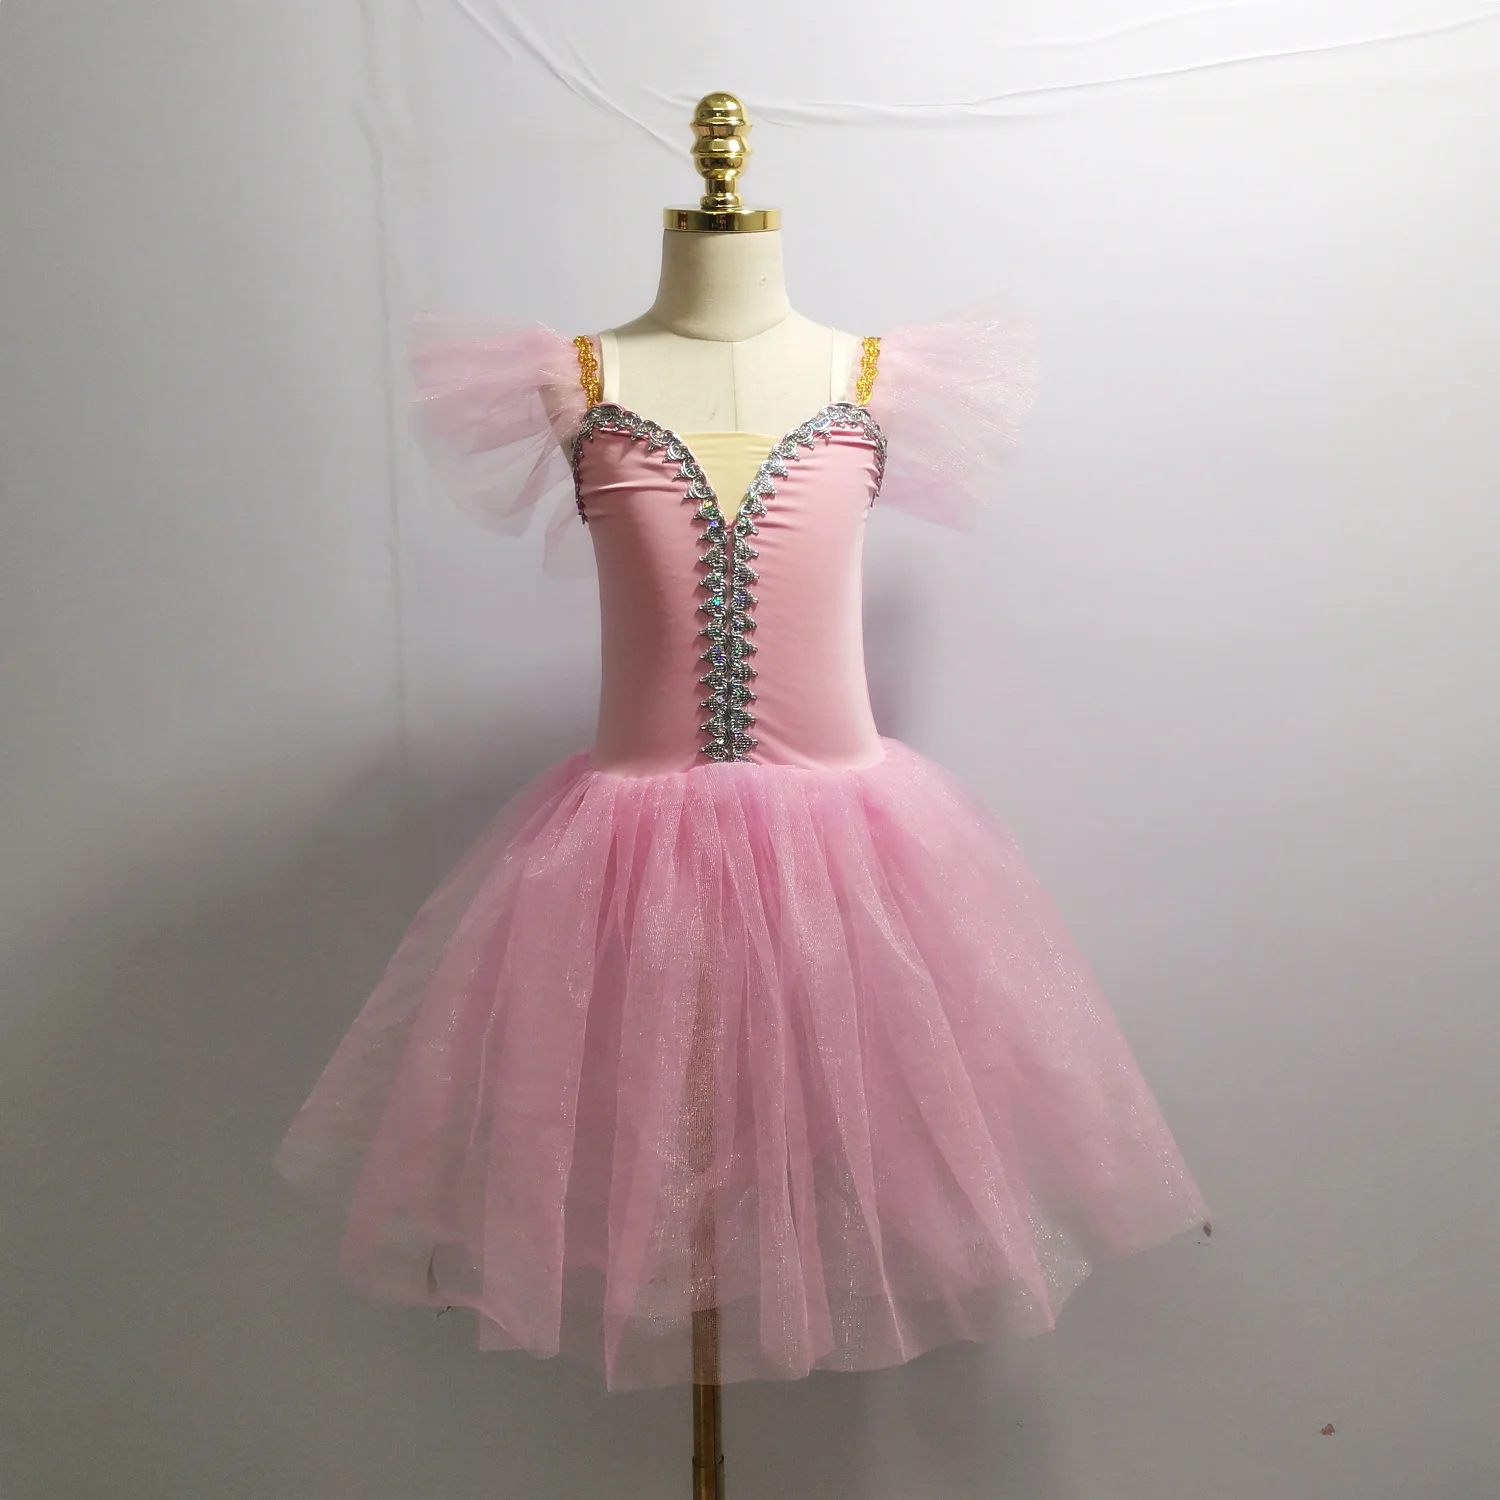 Pink Ballet Tutu Skirt Dance Costumes For Adult Professional Dance Skirt Long Dress For Children